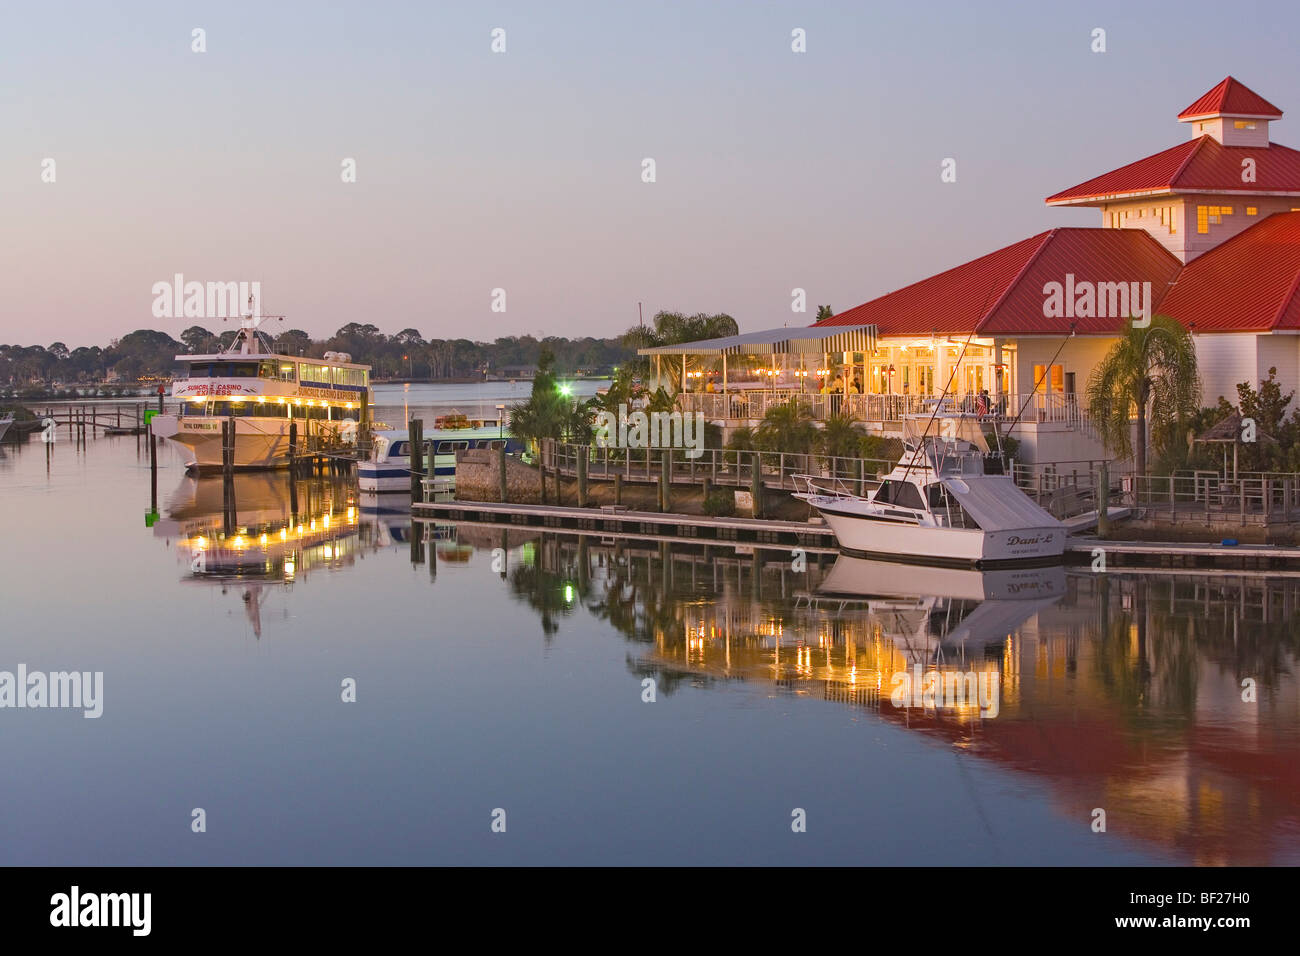 Le catture Waterfront Grille Restaurant sul lungomare nella luce del sole di sera, Tampa Bay, Porto Ritchey, Florida, Stati Uniti Foto Stock